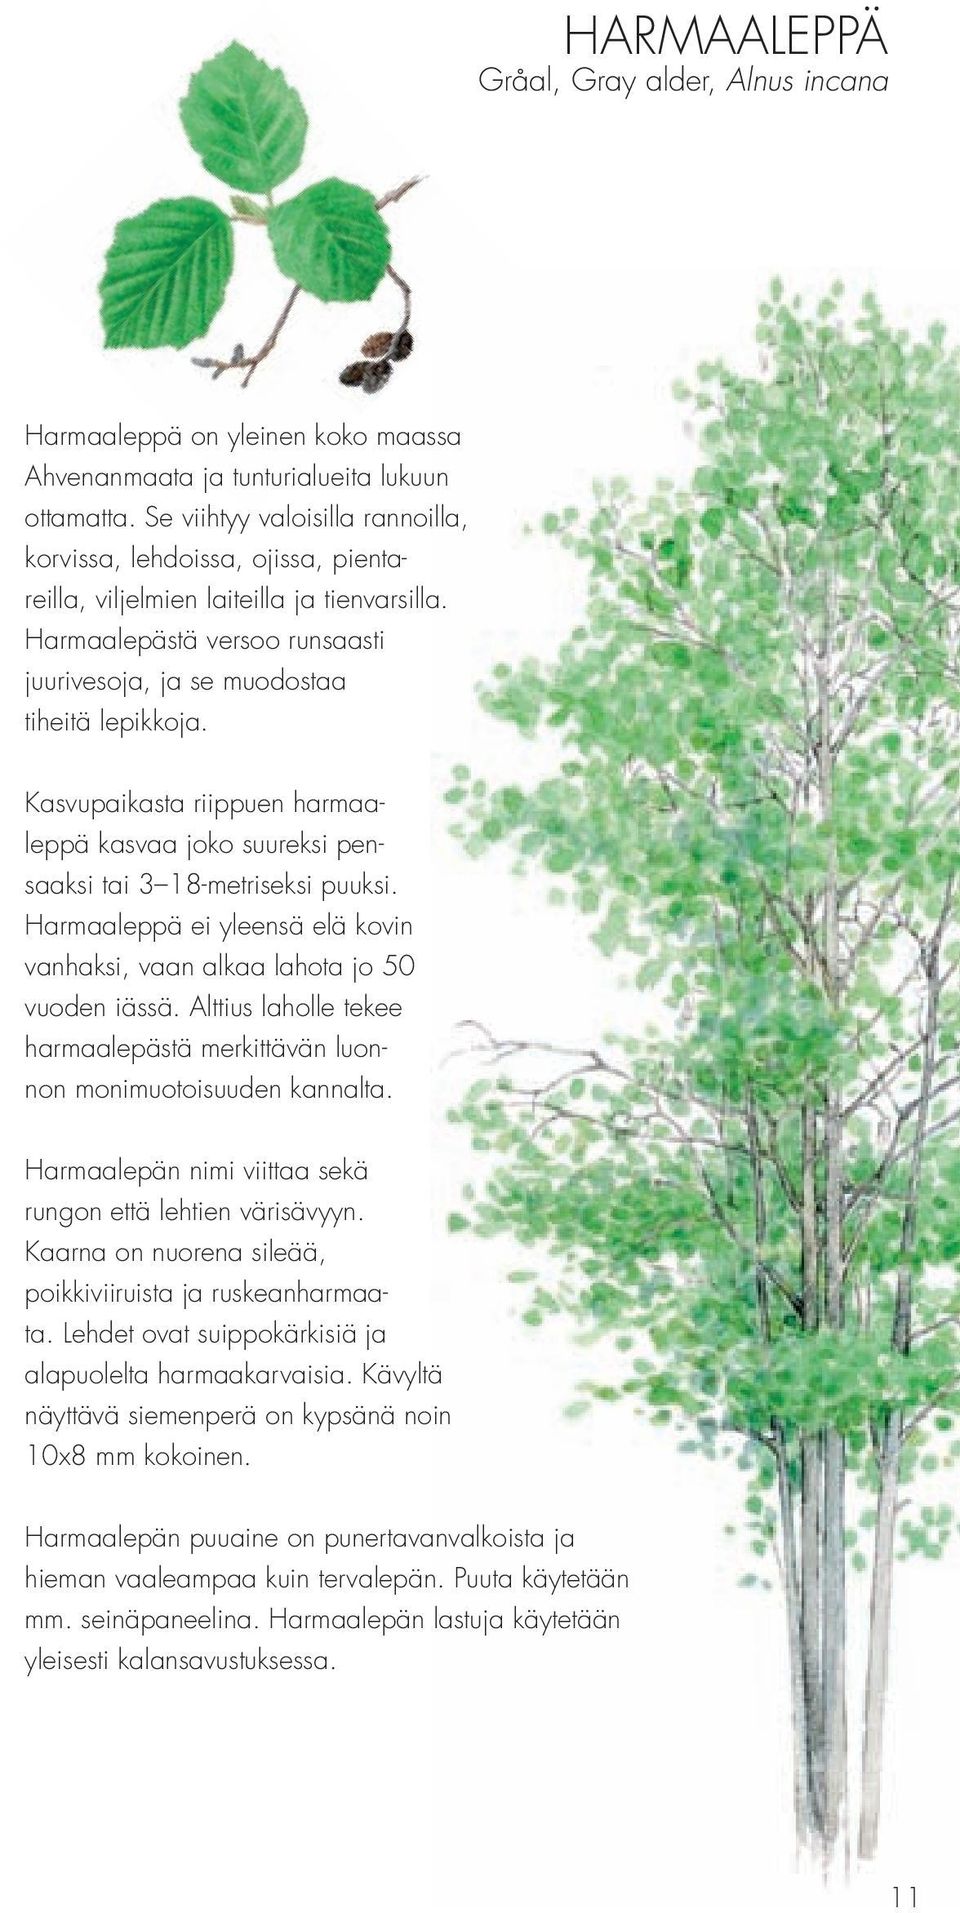 Kasvupaikasta riippuen harmaaleppä kasvaa joko suureksi pensaaksi tai 3 18-metriseksi puuksi. Harmaaleppä ei yleensä elä kovin vanhaksi, vaan alkaa lahota jo 50 vuoden iässä.